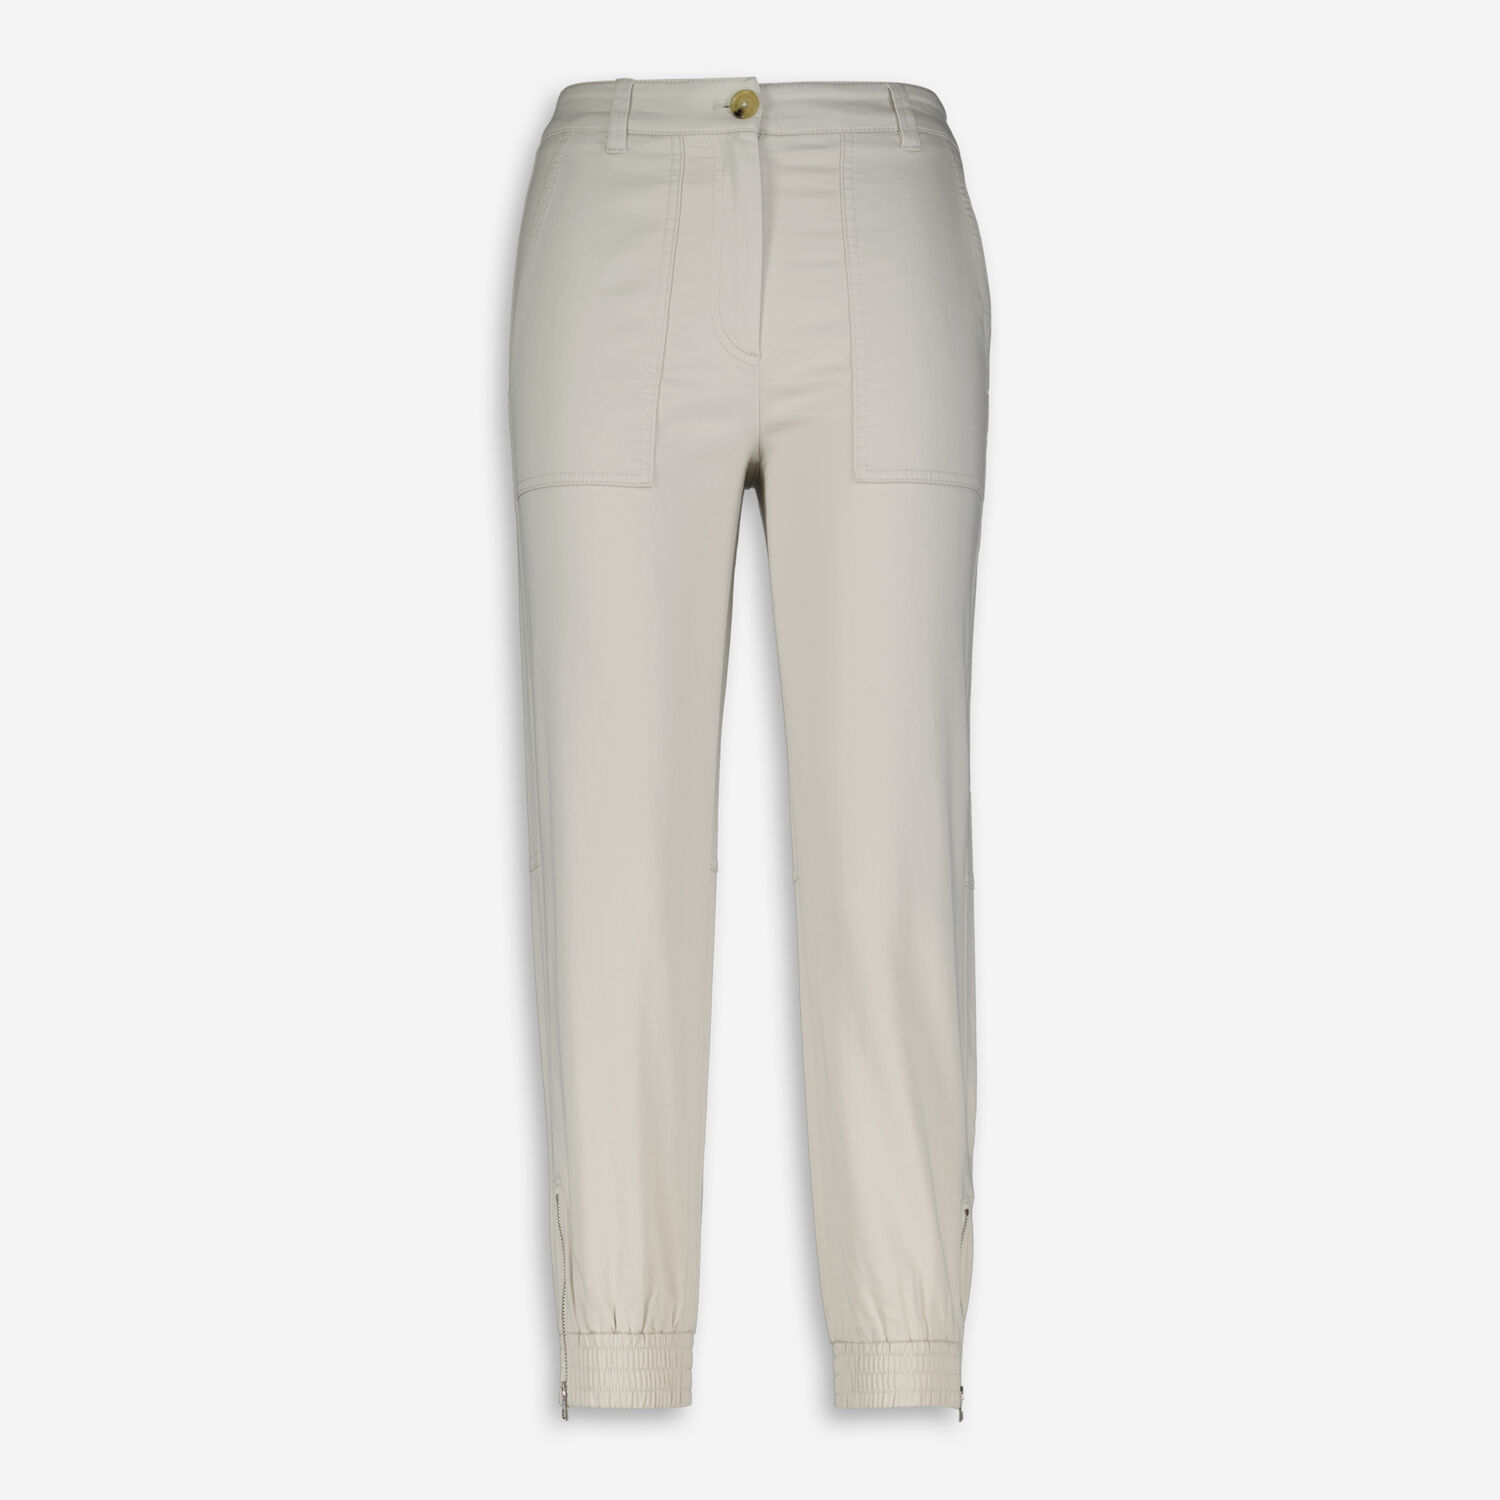 Укороченные брюки кремового цвета Marc O'Polo цена и фото